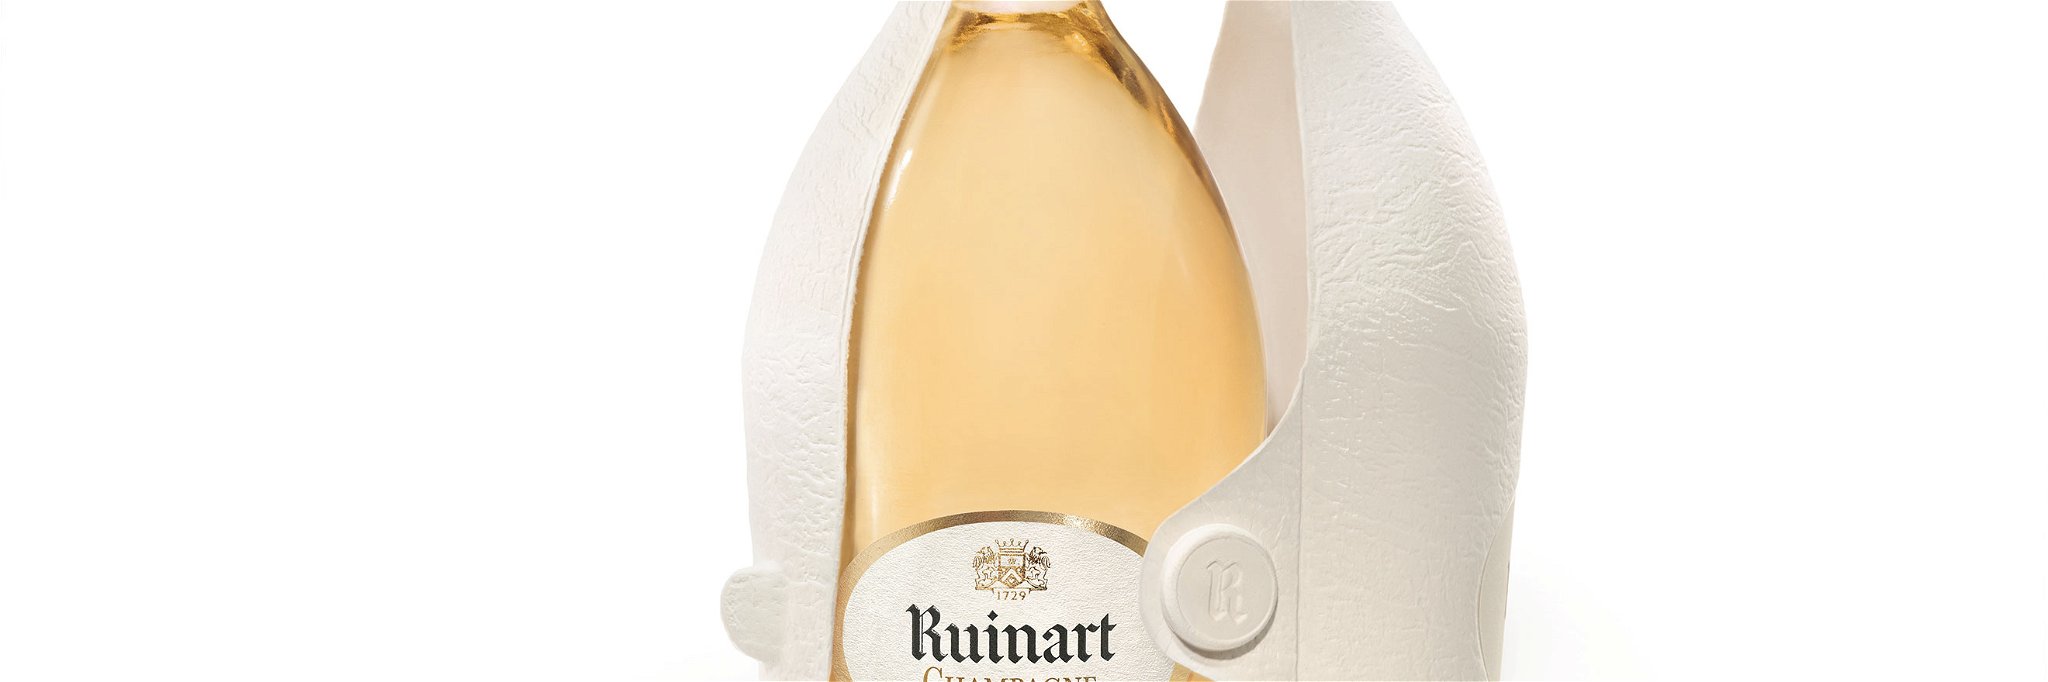 Die Verpackung des Blanc de Blancs von Ruinart&nbsp;hält den Inhalt über mehrere Stunden kühl.